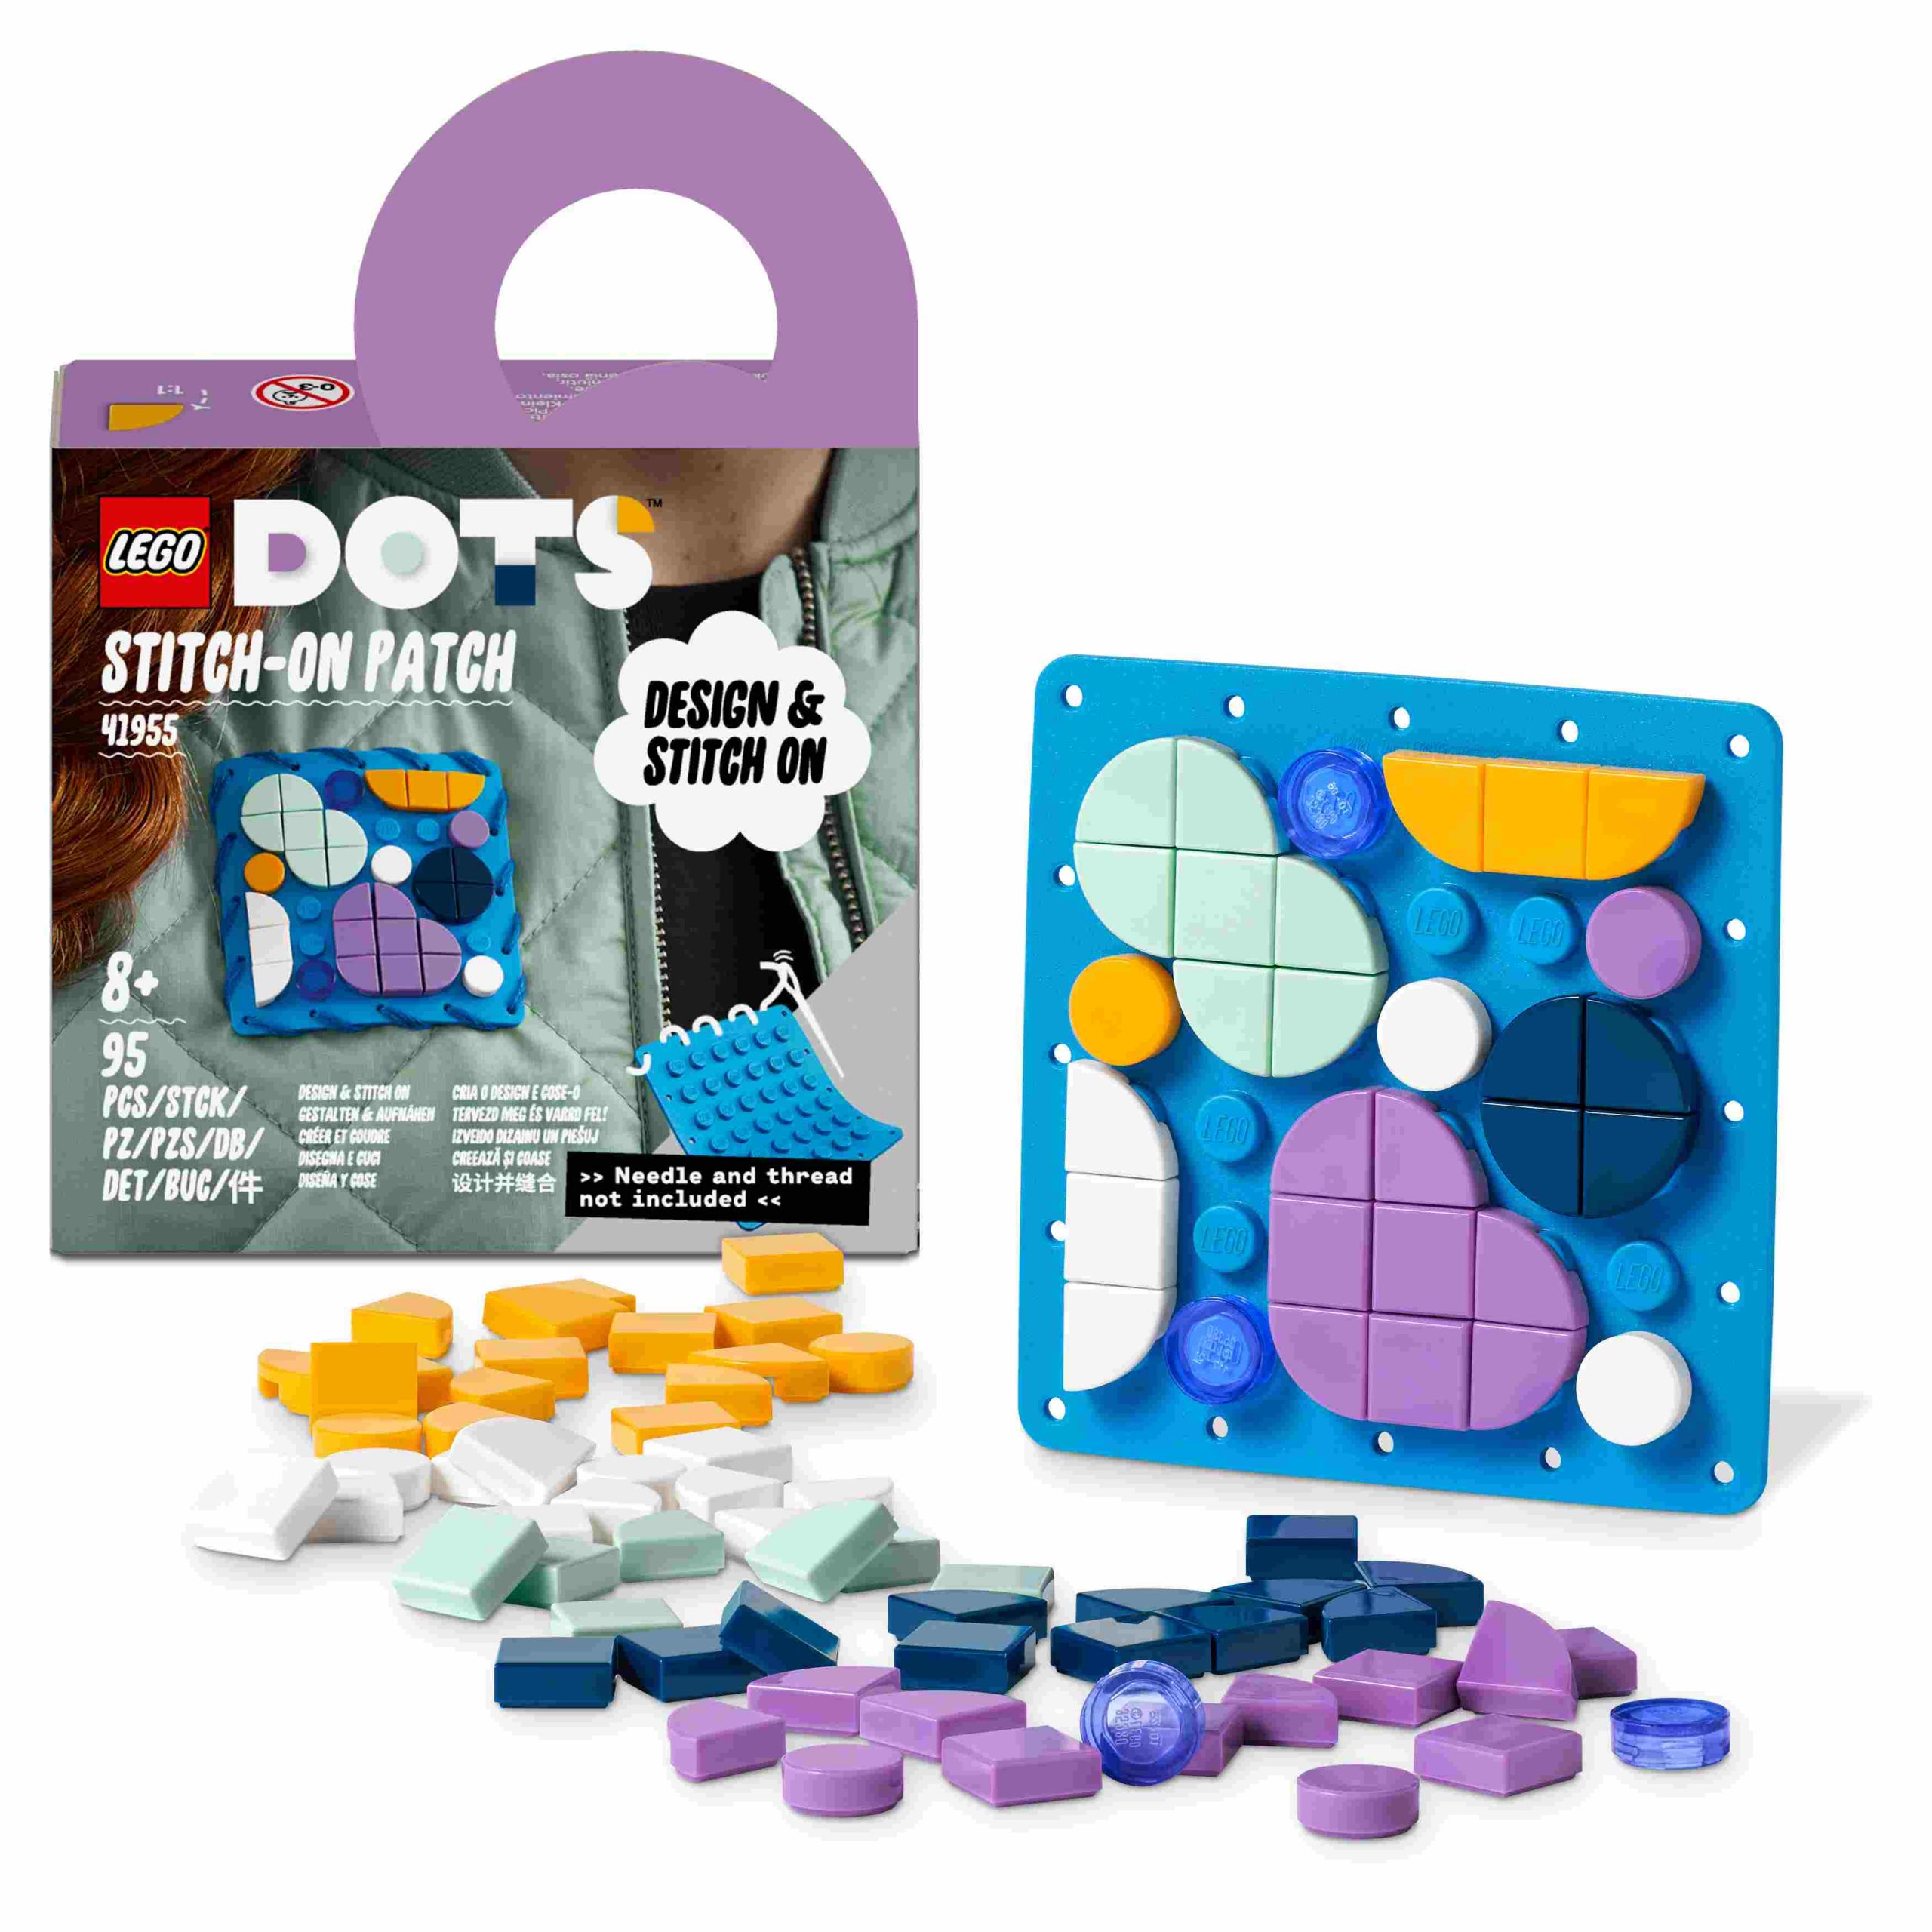 Lego dots 41955 patch cucibile, set fai da te con toppa da cucire, regalo creativo, giochi per bambini da 8 anni in su - DOTS, Lego